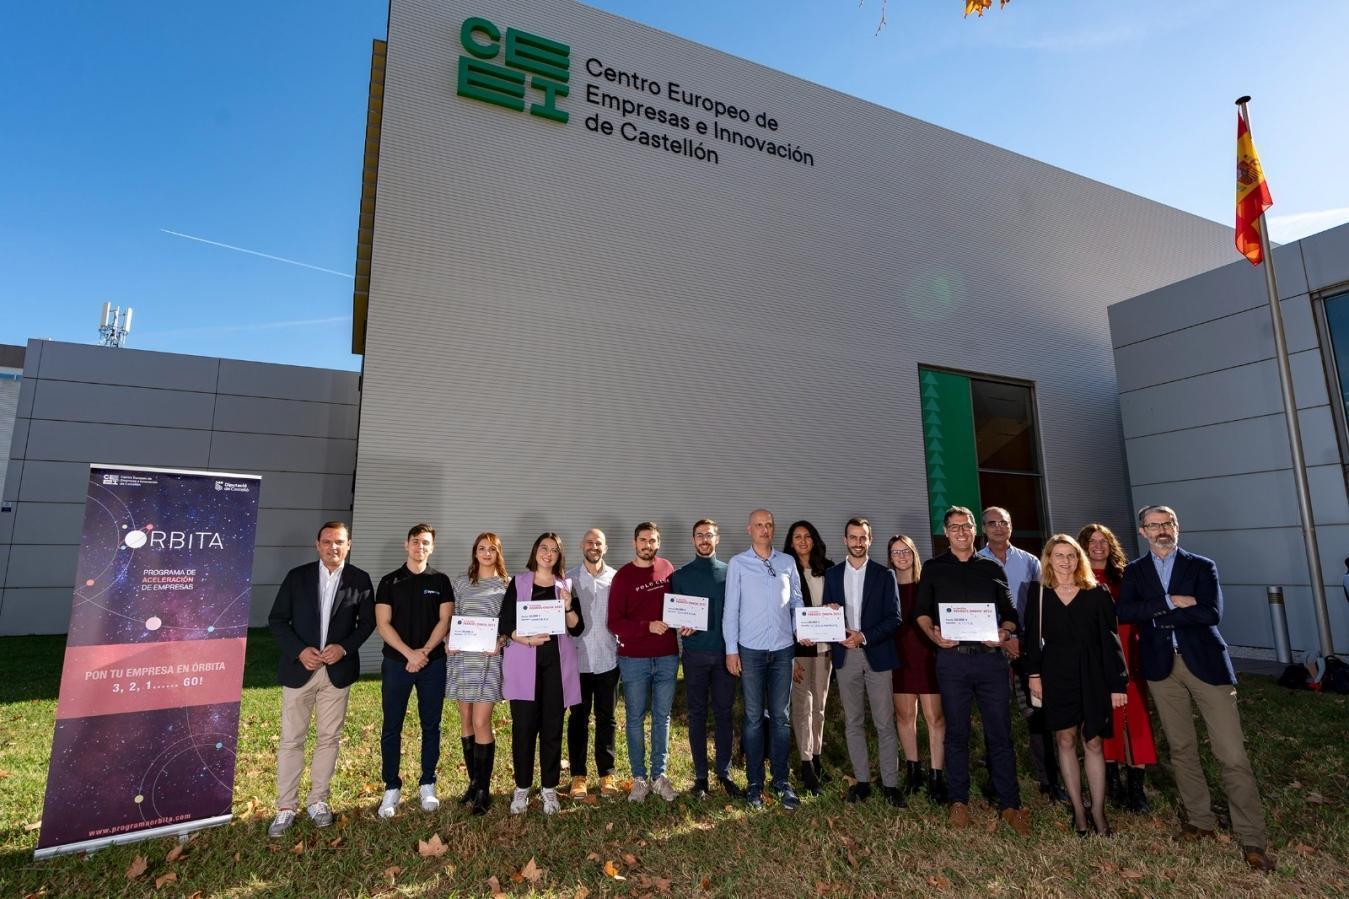 La Diputació de Castelló posa en valor l'emprenedoria i l'activitat empresarial en els Premis Òrbita